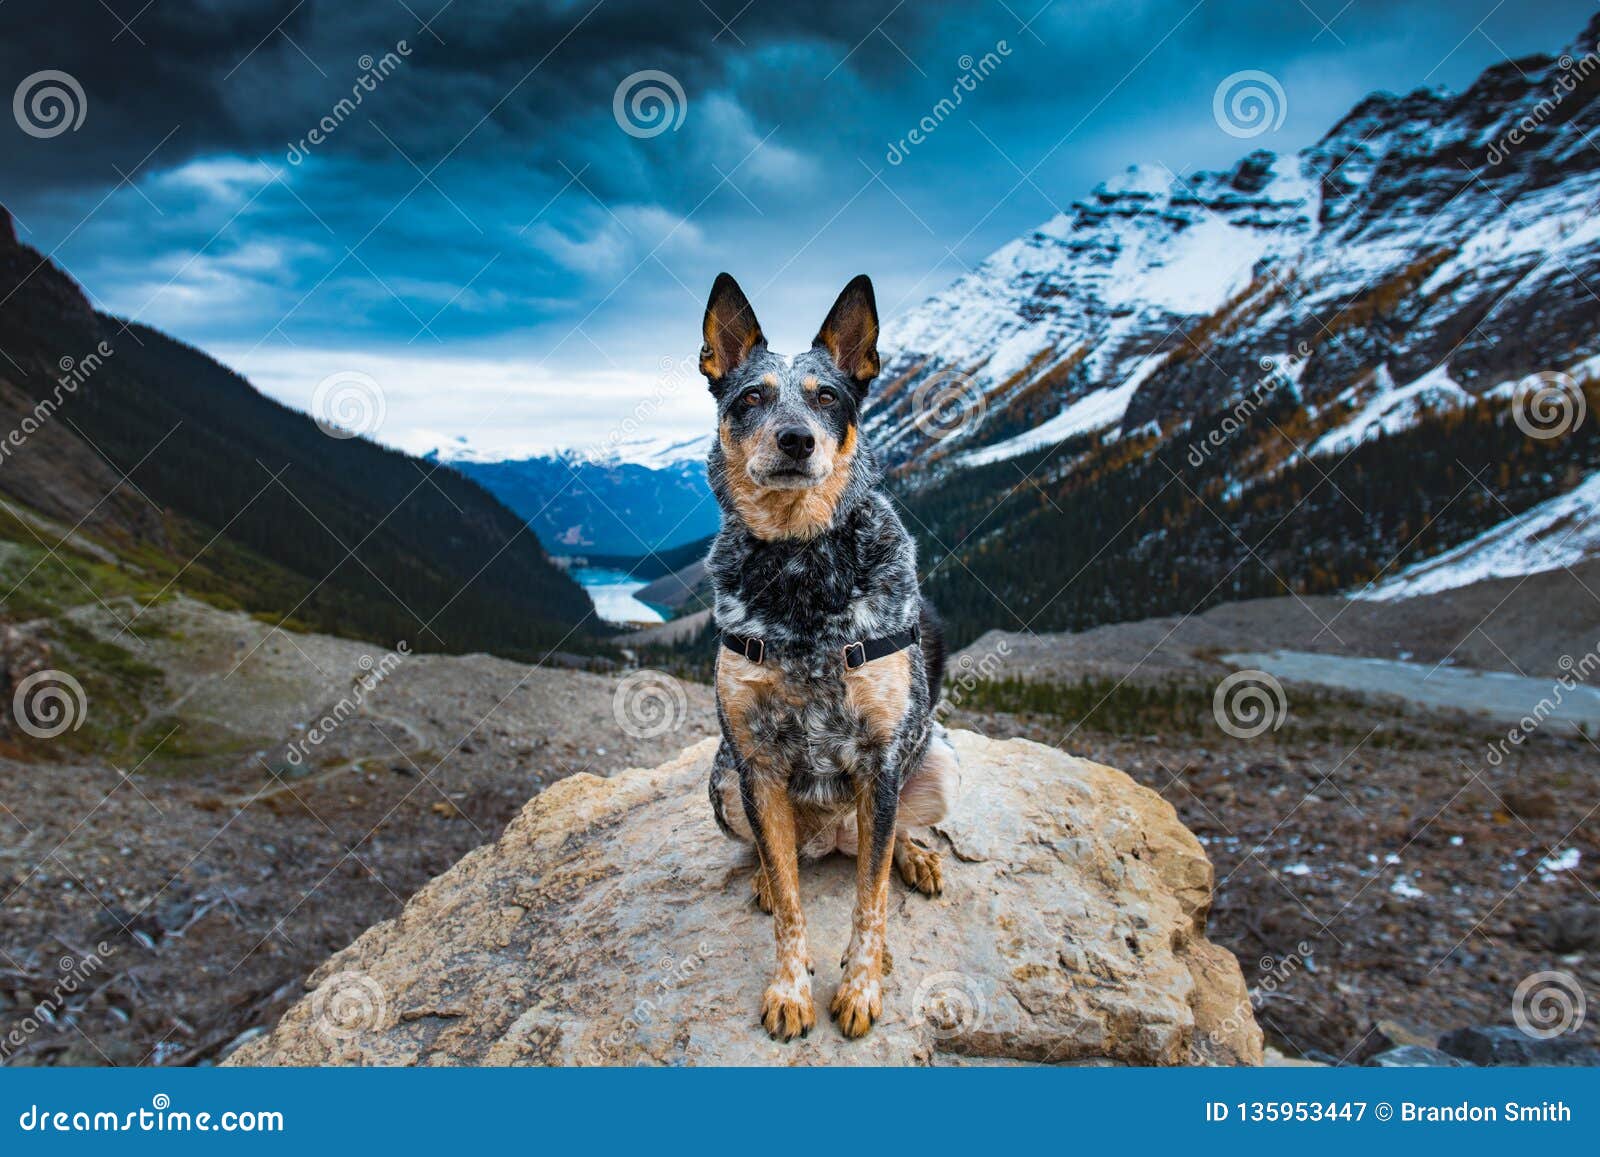 Udvikle zone i tilfælde af 1,577 Blue Heeler Dog Photos - Free & Royalty-Free Stock Photos from  Dreamstime